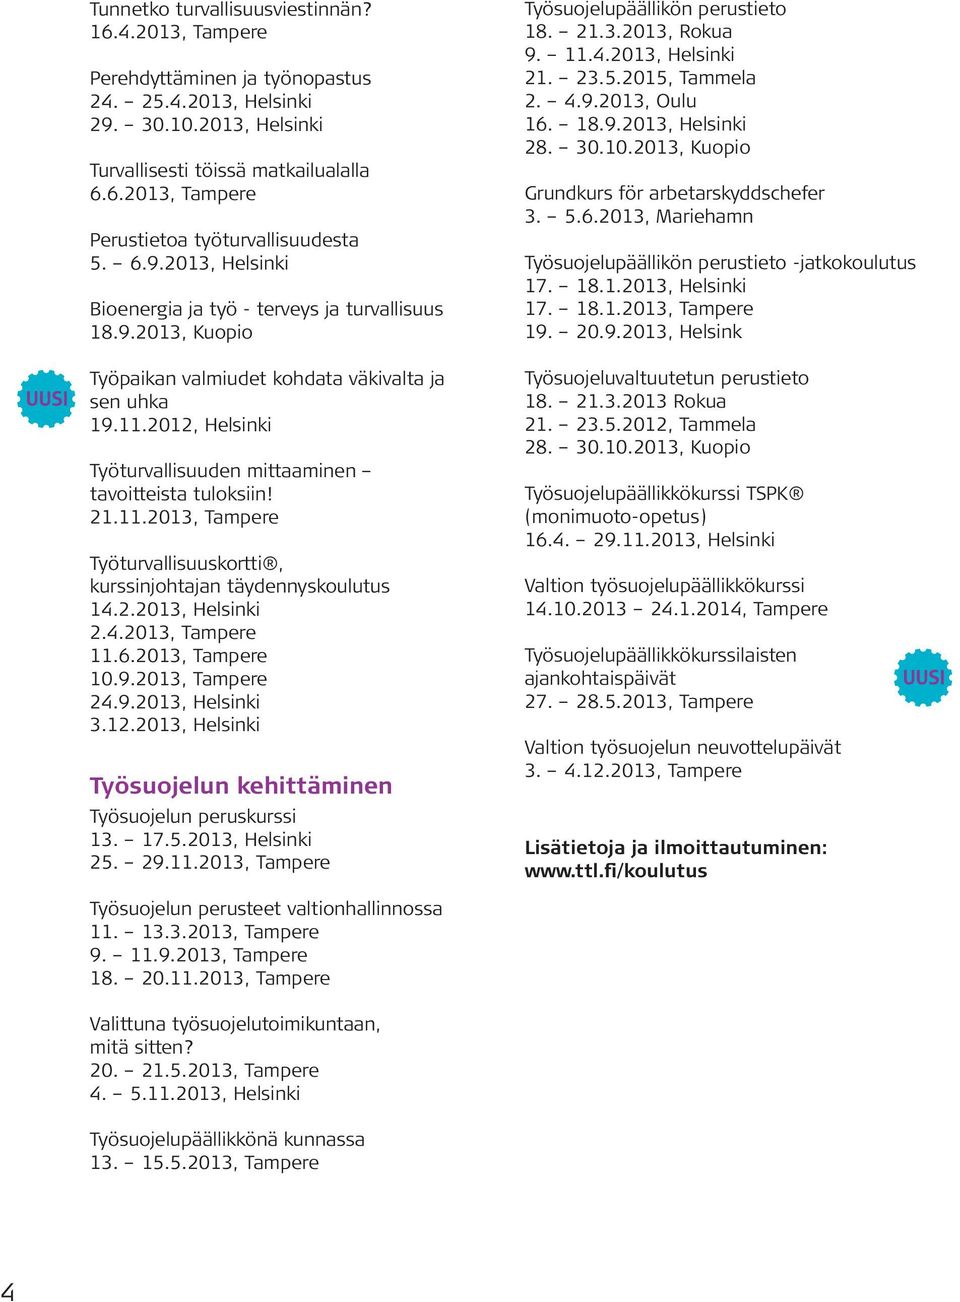 2012, Helsinki Työturvallisuuden mittaaminen tavoitteista tuloksiin! 21.11.2013, Tampere Työturvallisuuskortti, kurssinjohtajan täydennyskoulutus 14.2.2013, Helsinki 2.4.2013, Tampere 11.6.